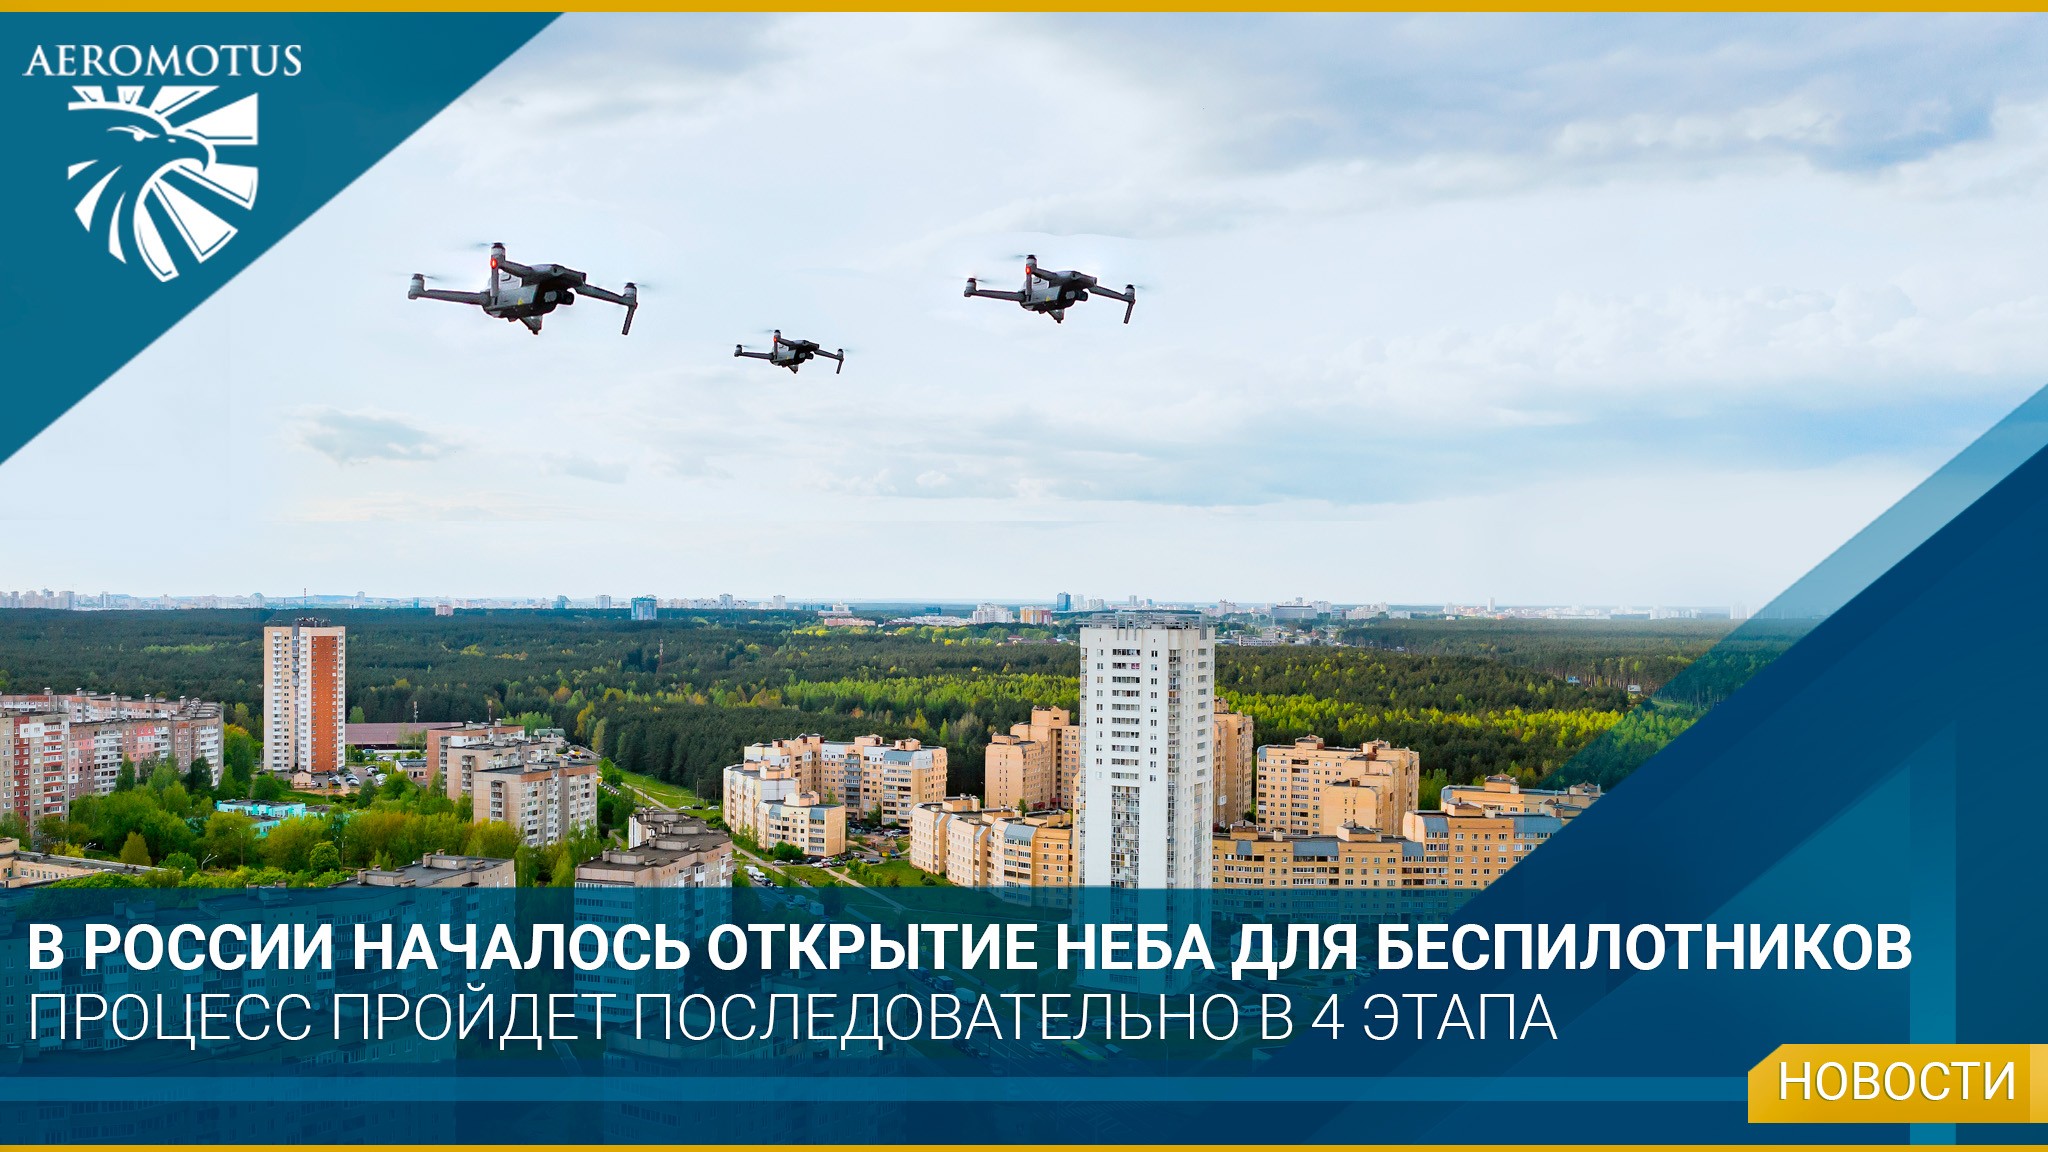 В России начался процесс открытия неба для беспилотников - Интересная информация